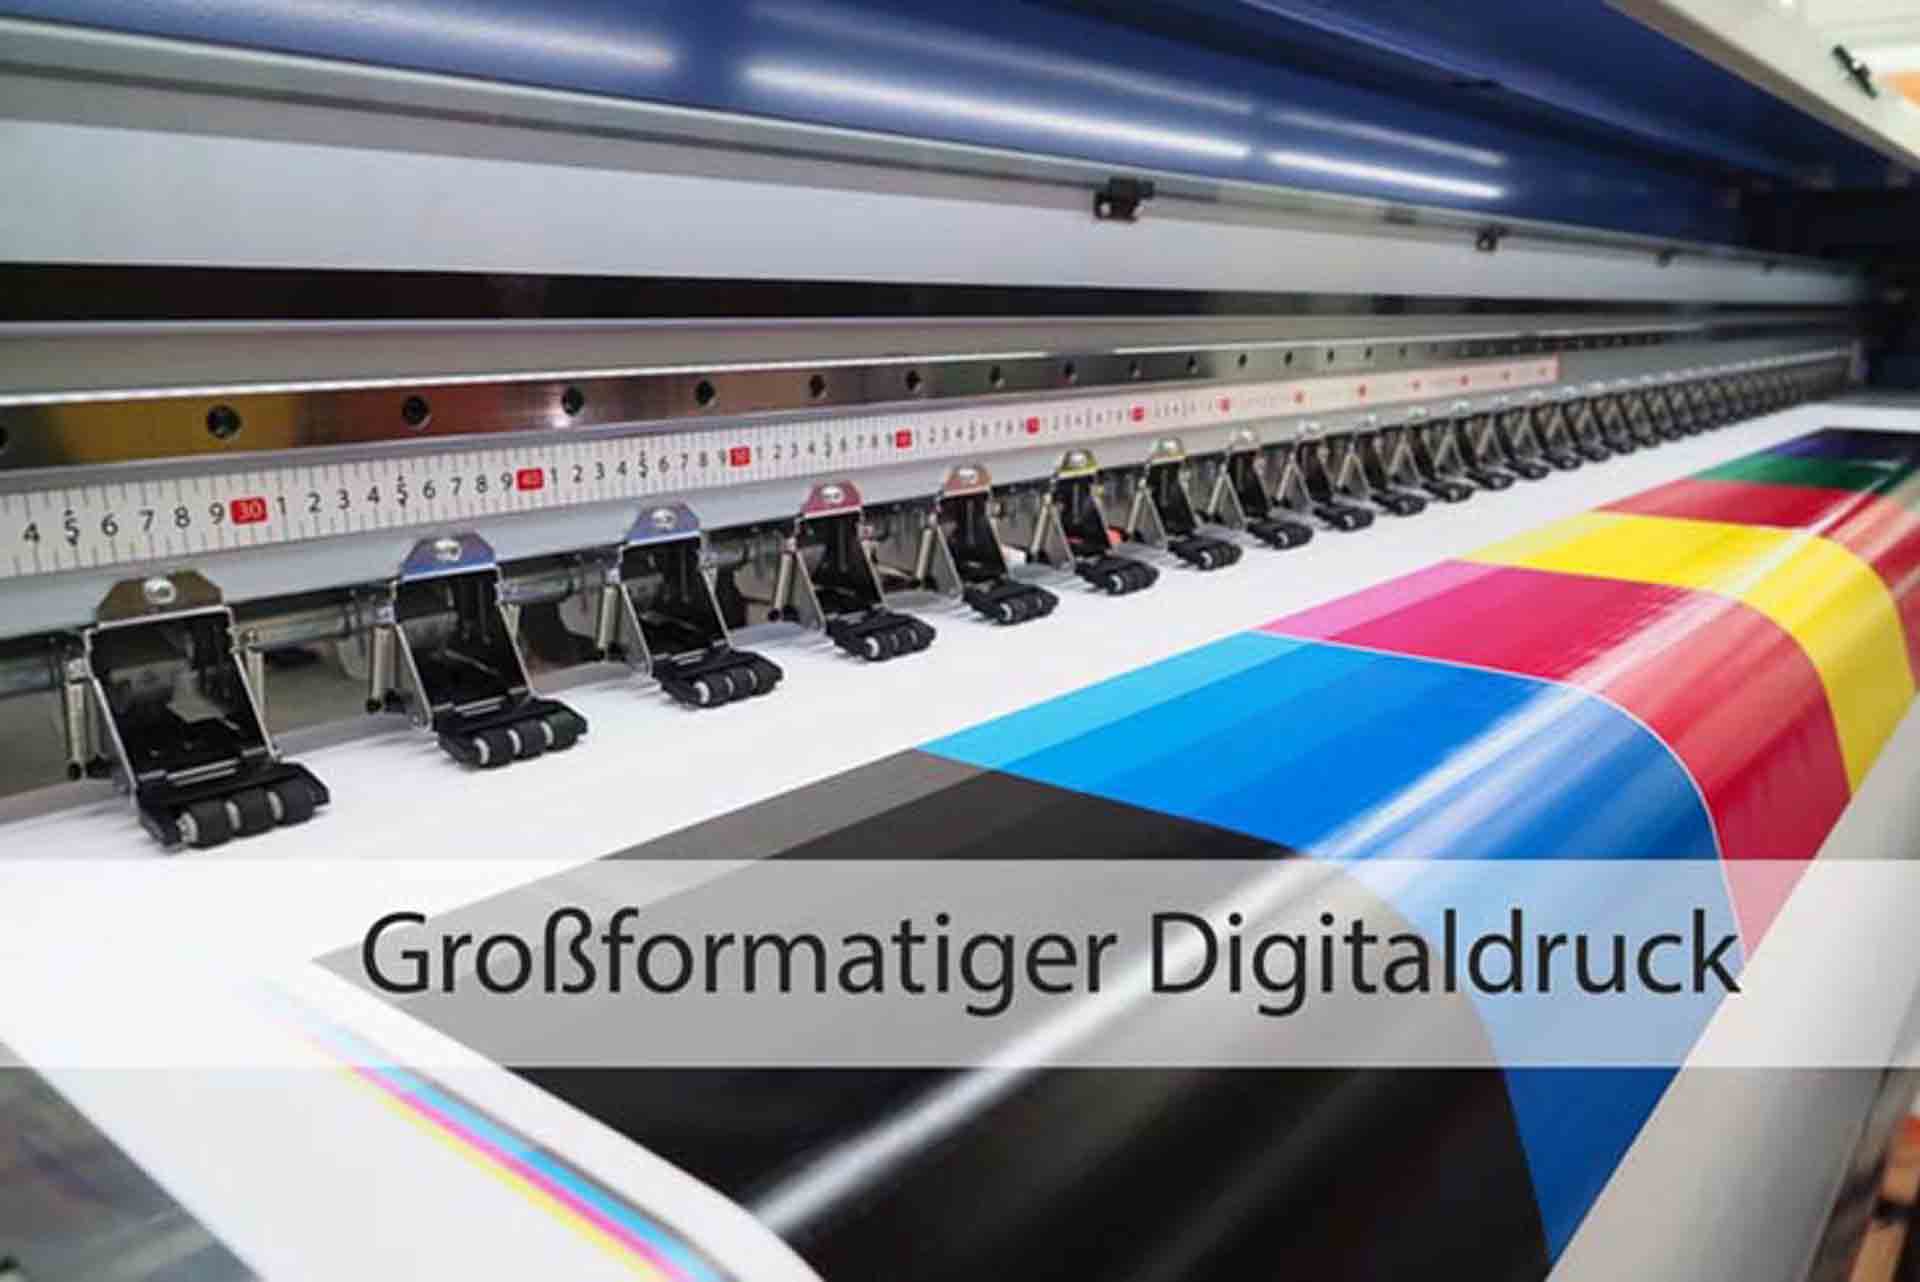 Großformatiger Digitaldruck | Papier-Schäfer GmbH